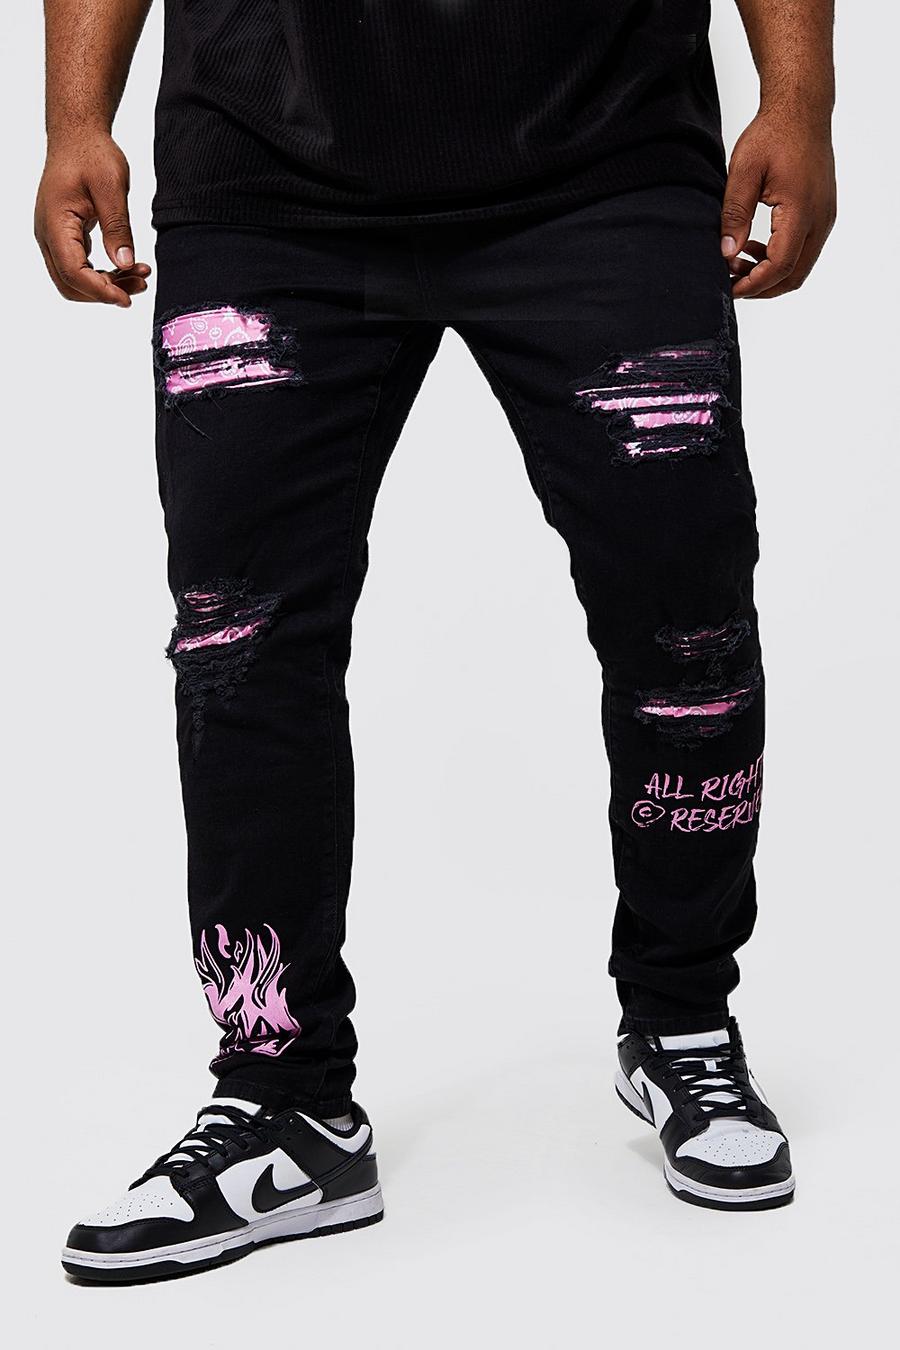 Black nero סקיני ג'ינס עם הדפס בנדנה-גרפיטי וקרעים, מידות גדולות